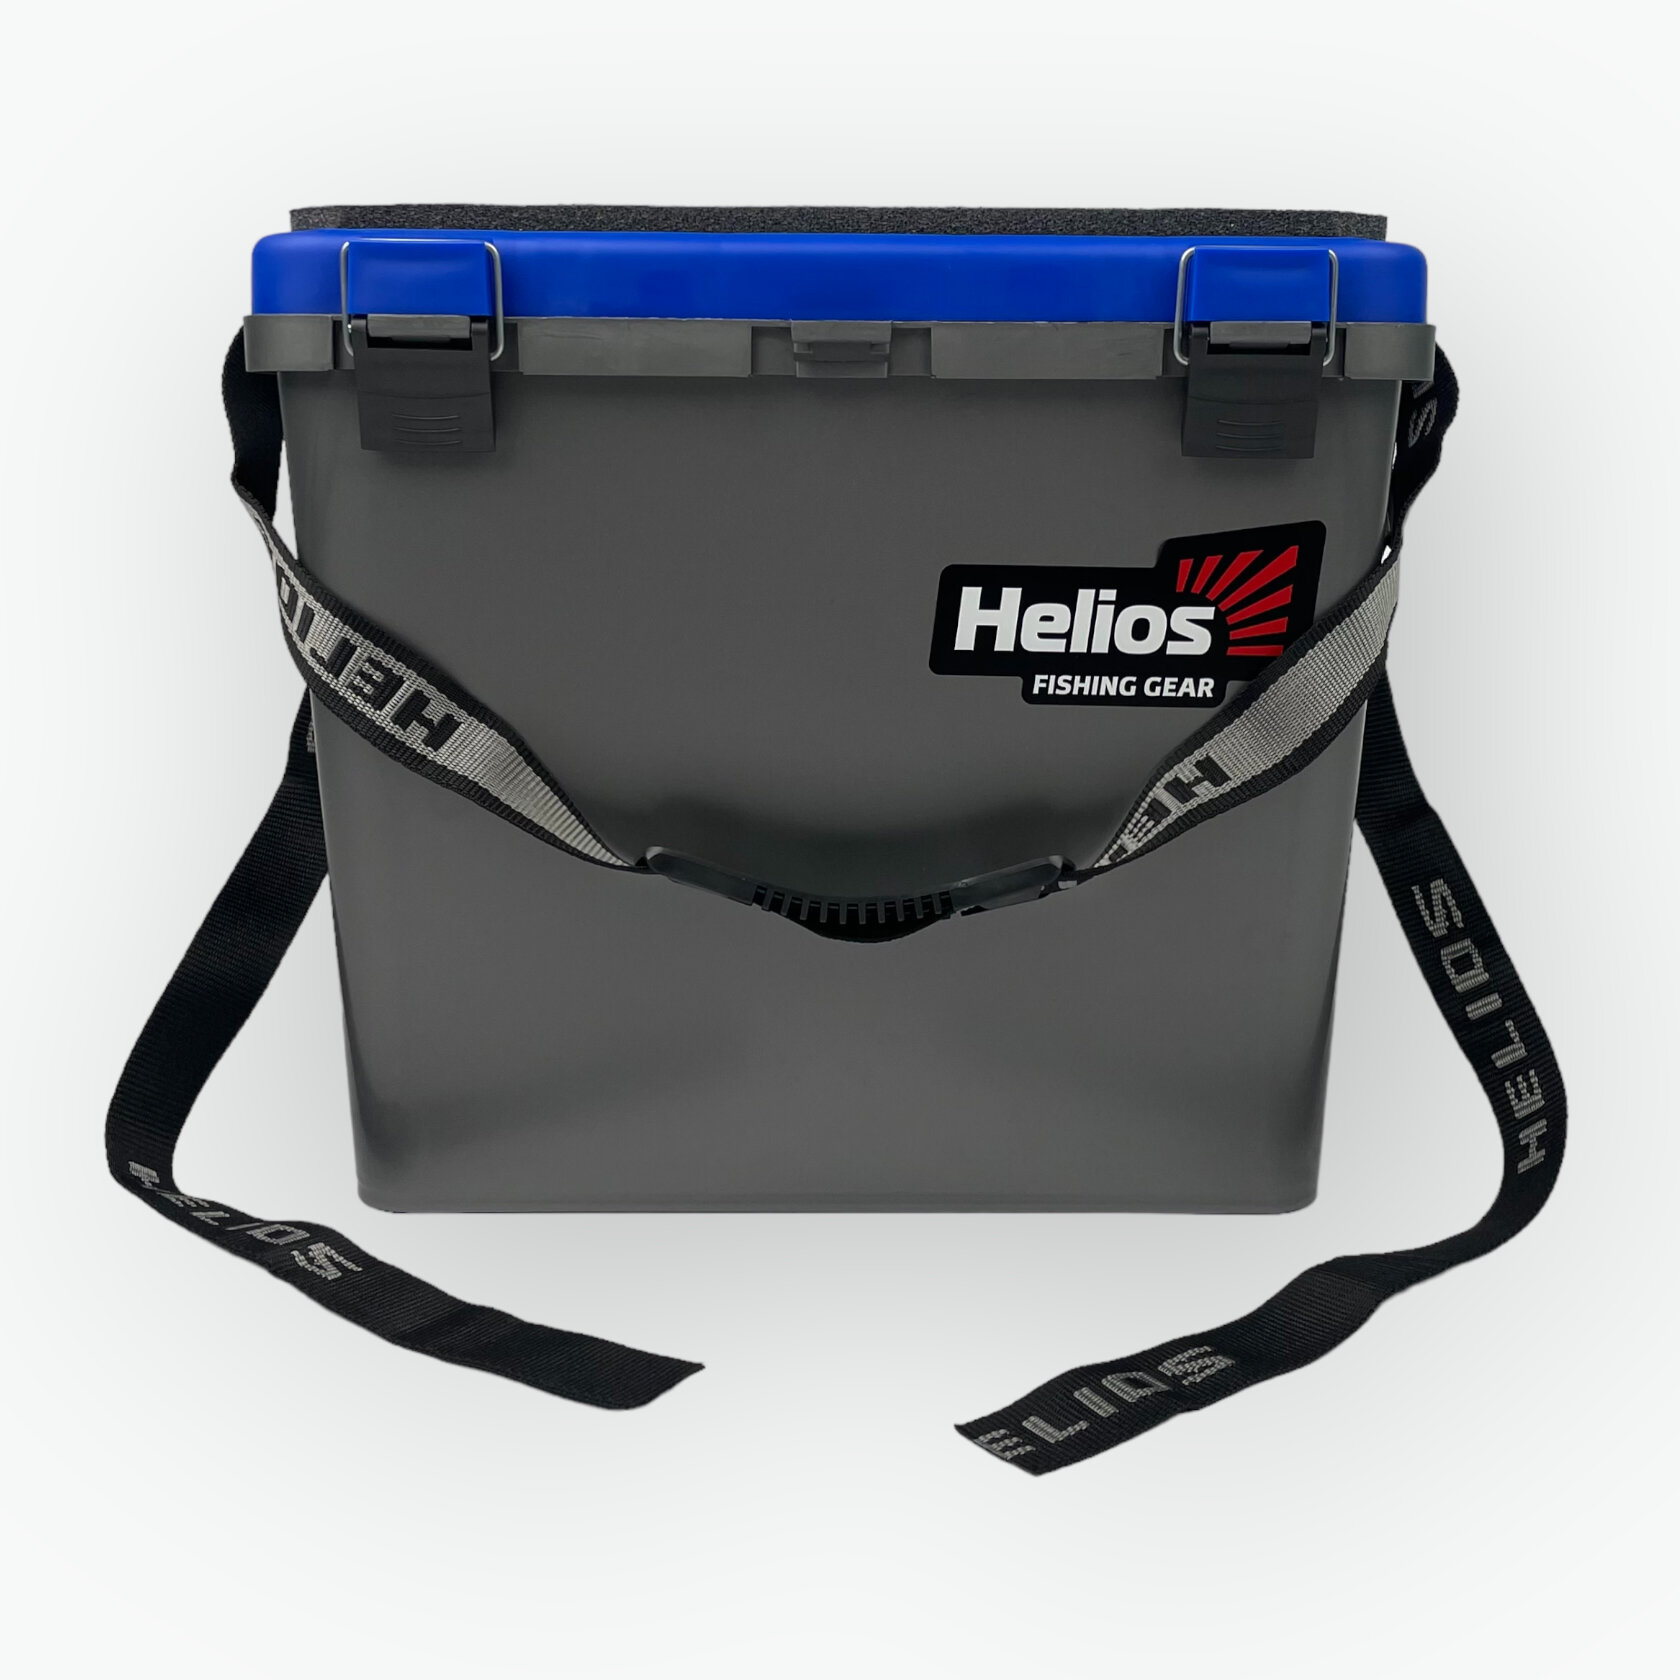 Ящик односекционный зимний Helios FishBox M 8 - 19 литров - Серый/синий